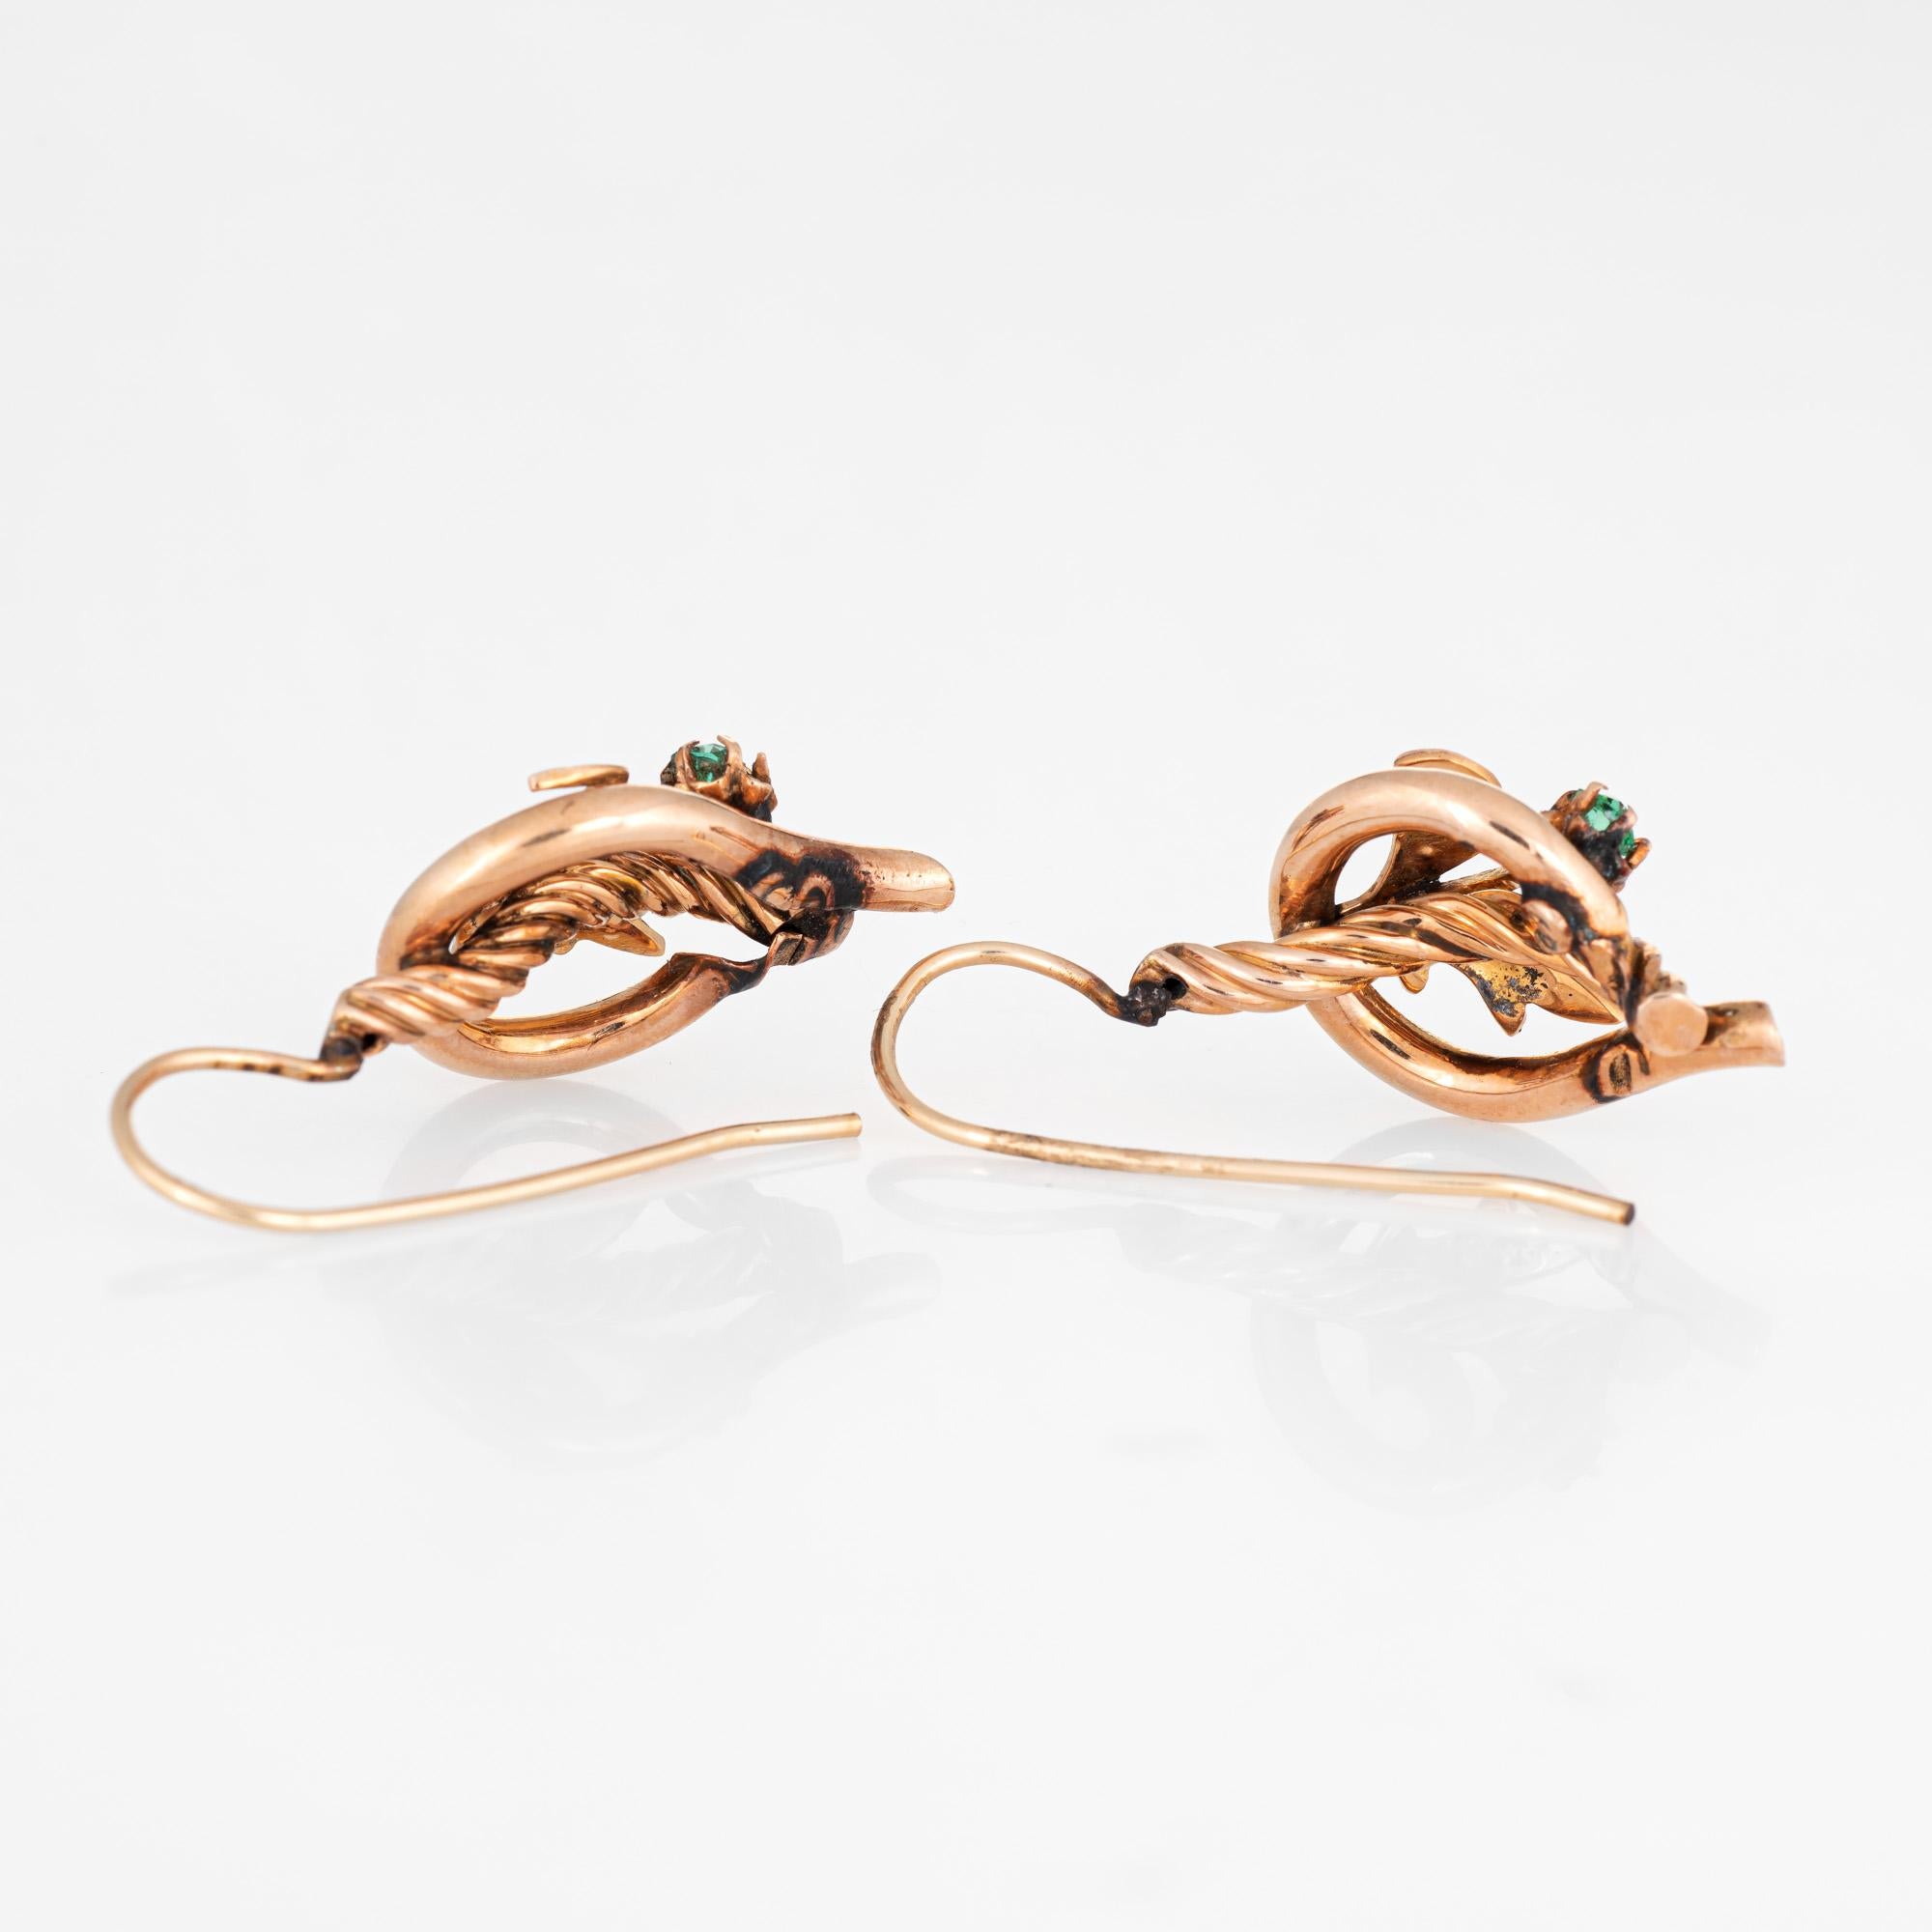 Elegantes Paar antiker viktorianischer Ohrringe (ca. 1880 bis 1900) aus 10 Karat Roségold. 

Die Saatperlen sind ca. 1 mm bis 1,5 mm groß. Grün  werden auf jeweils 0,10 Karat geschätzt. Anmerkung: eine Saatperle fehlt. 

Die bezaubernden Ohrringe